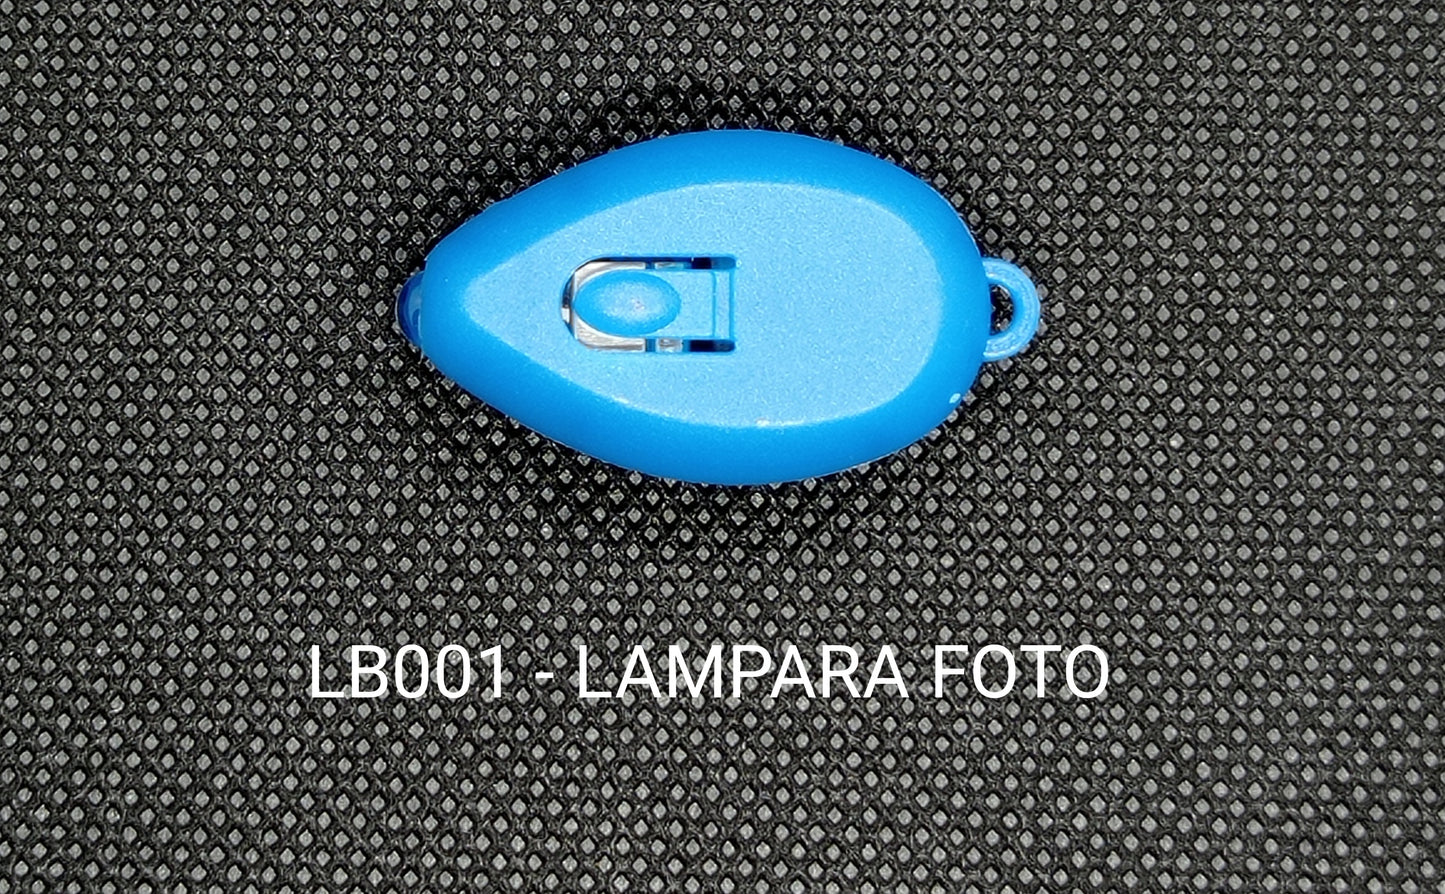 LB001 - LAMPARA PRUEBA DE FOTOCROMATICO